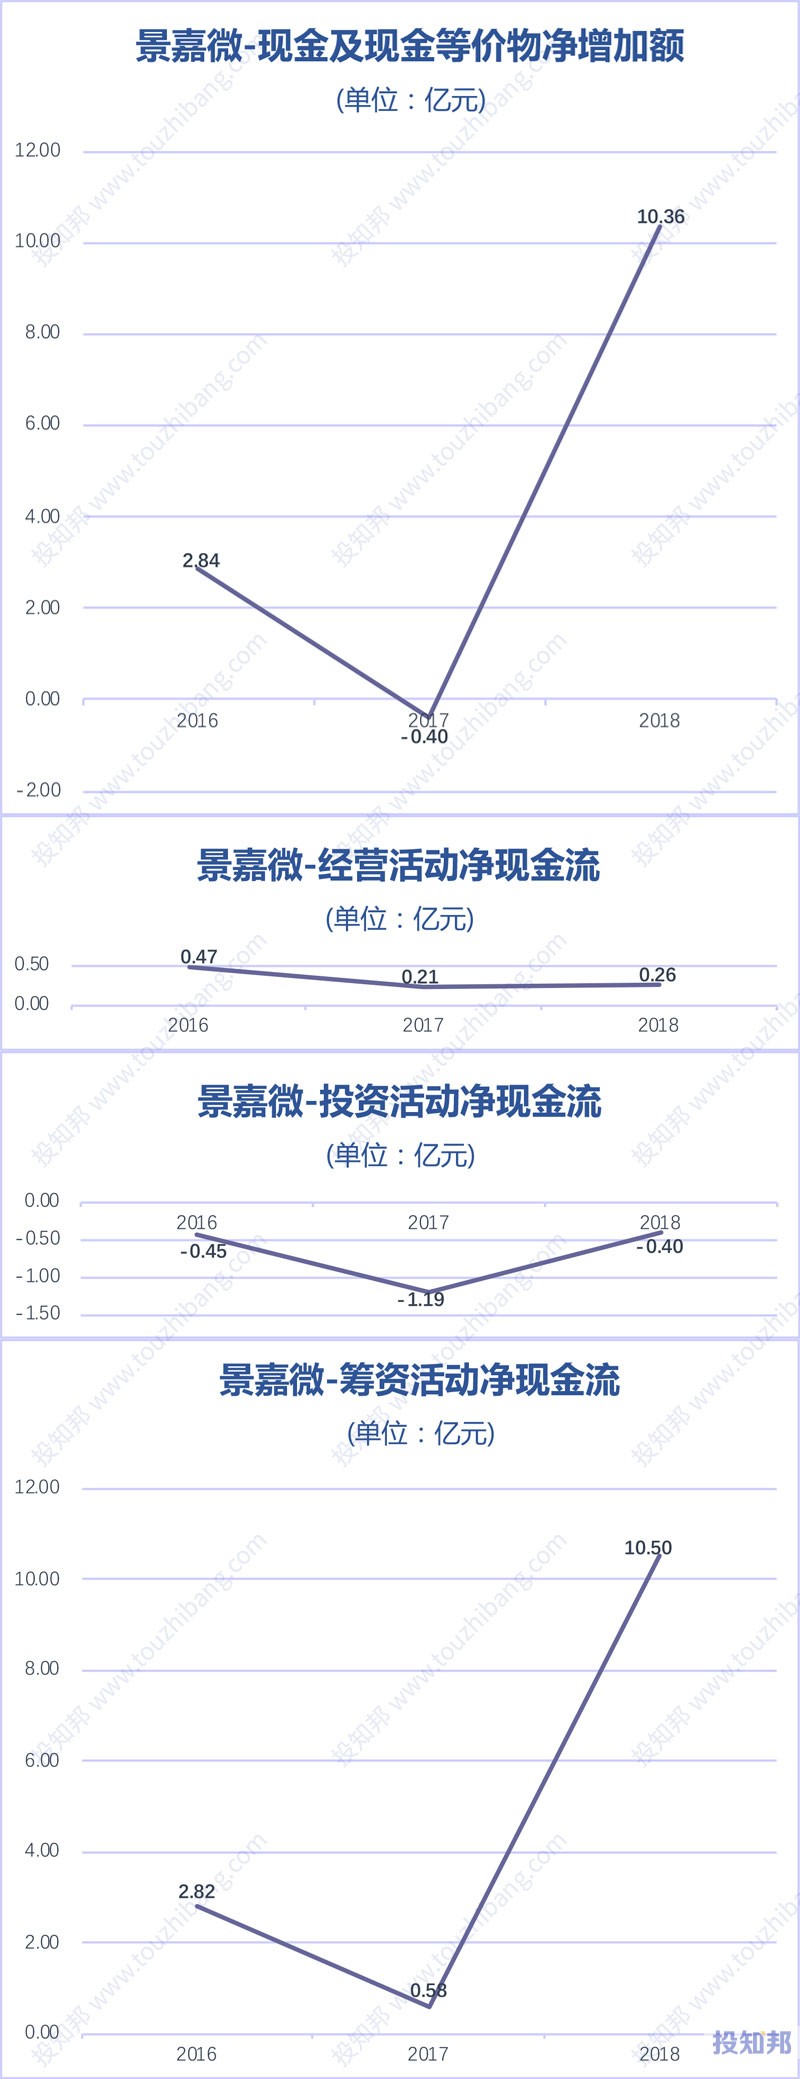 图解景嘉微(300474)财报数据(2016年~2019年Q3)